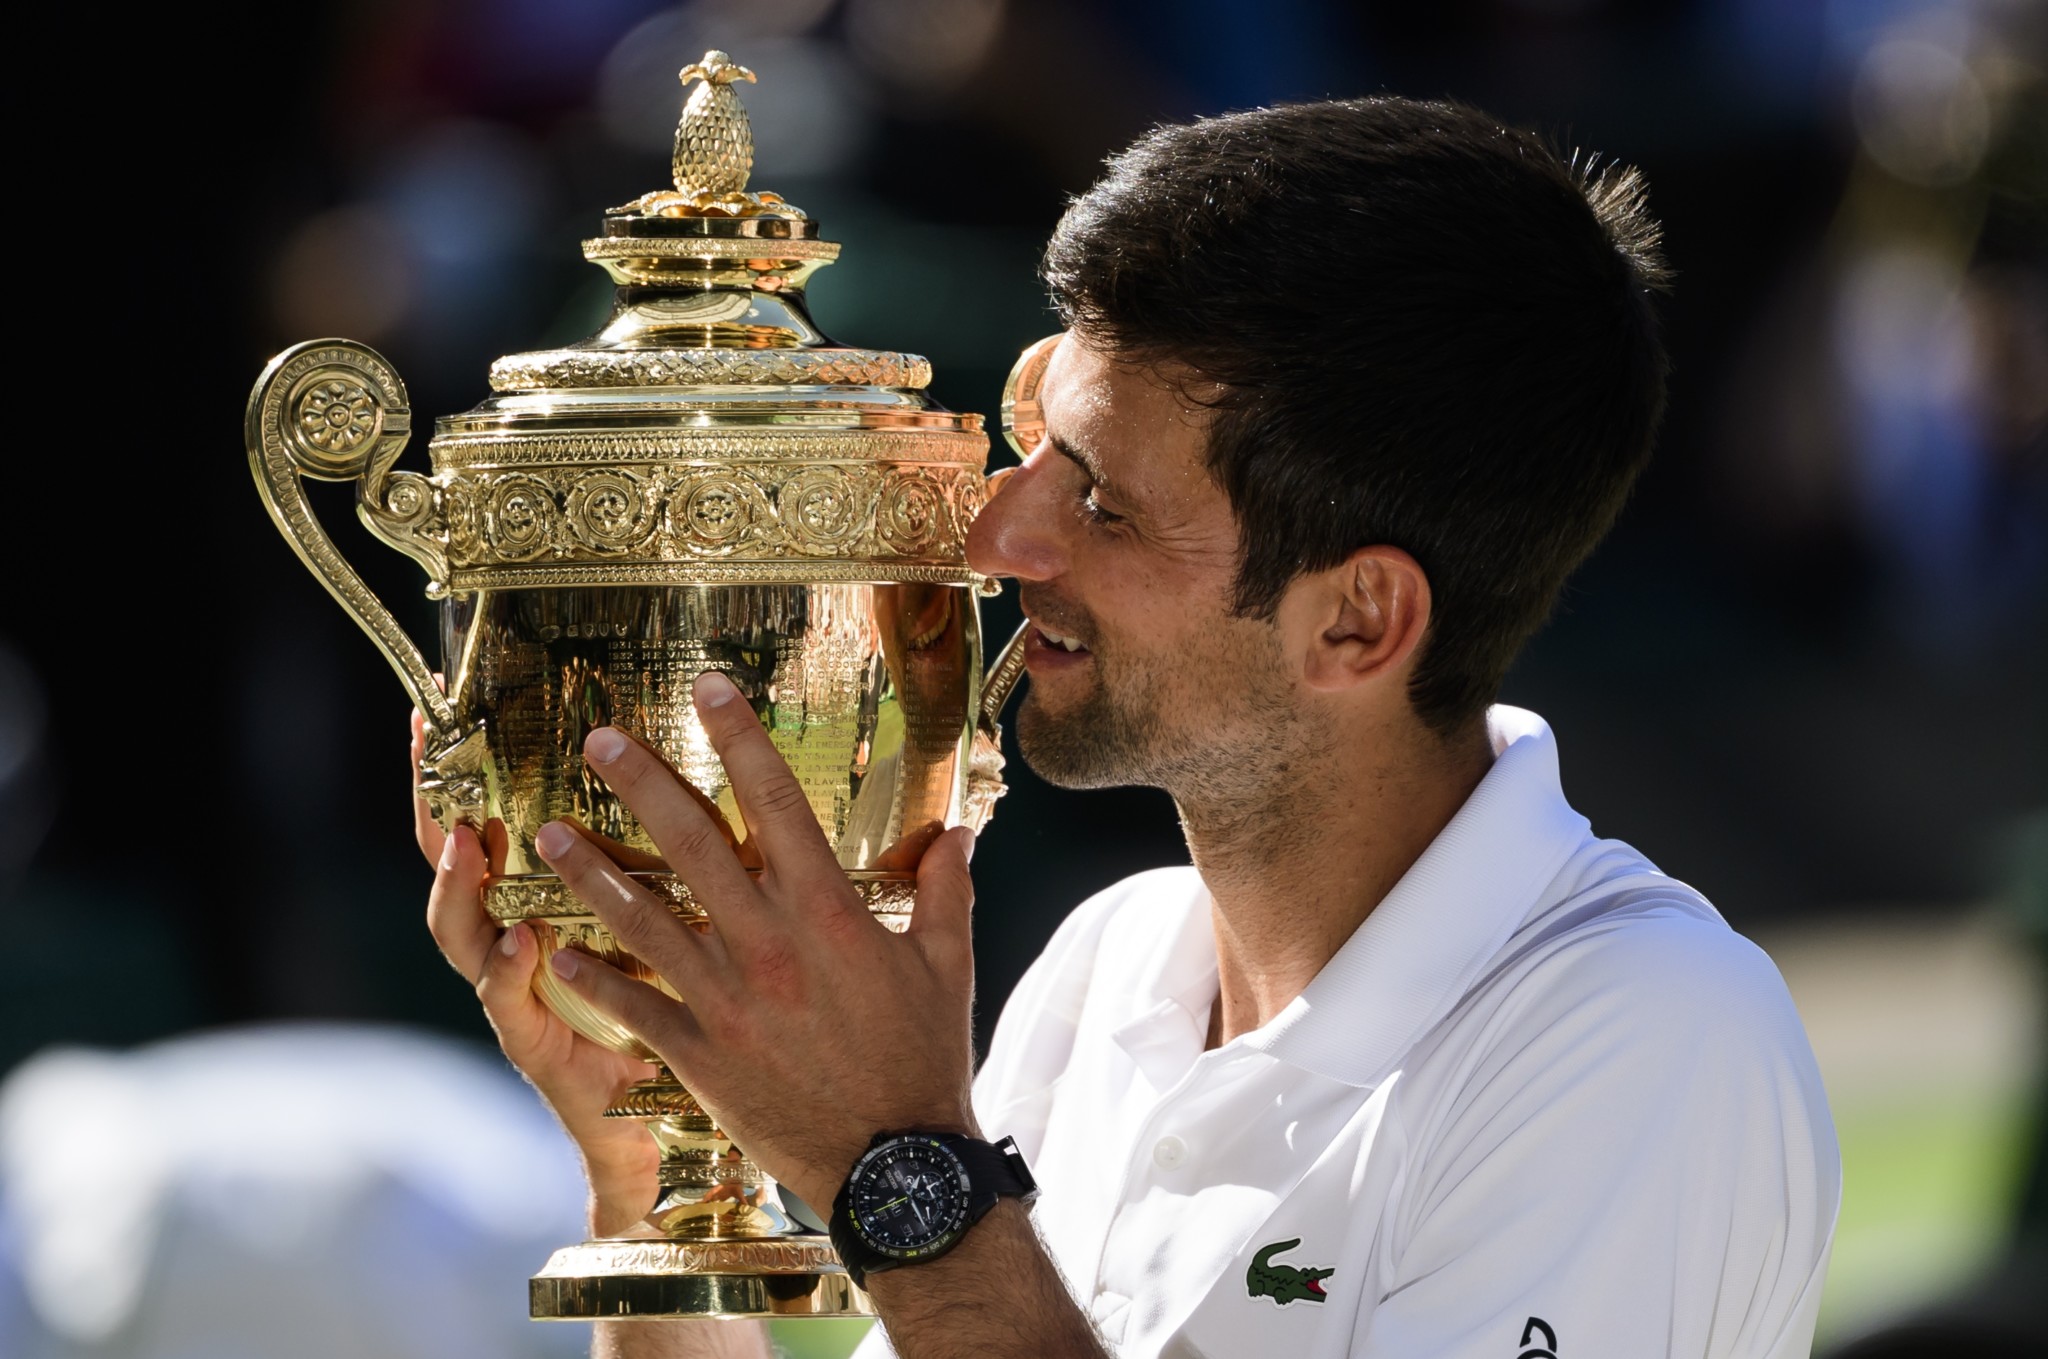 Seiko celebrates success of brand ambassador Novak Djokovic at Wimbledon